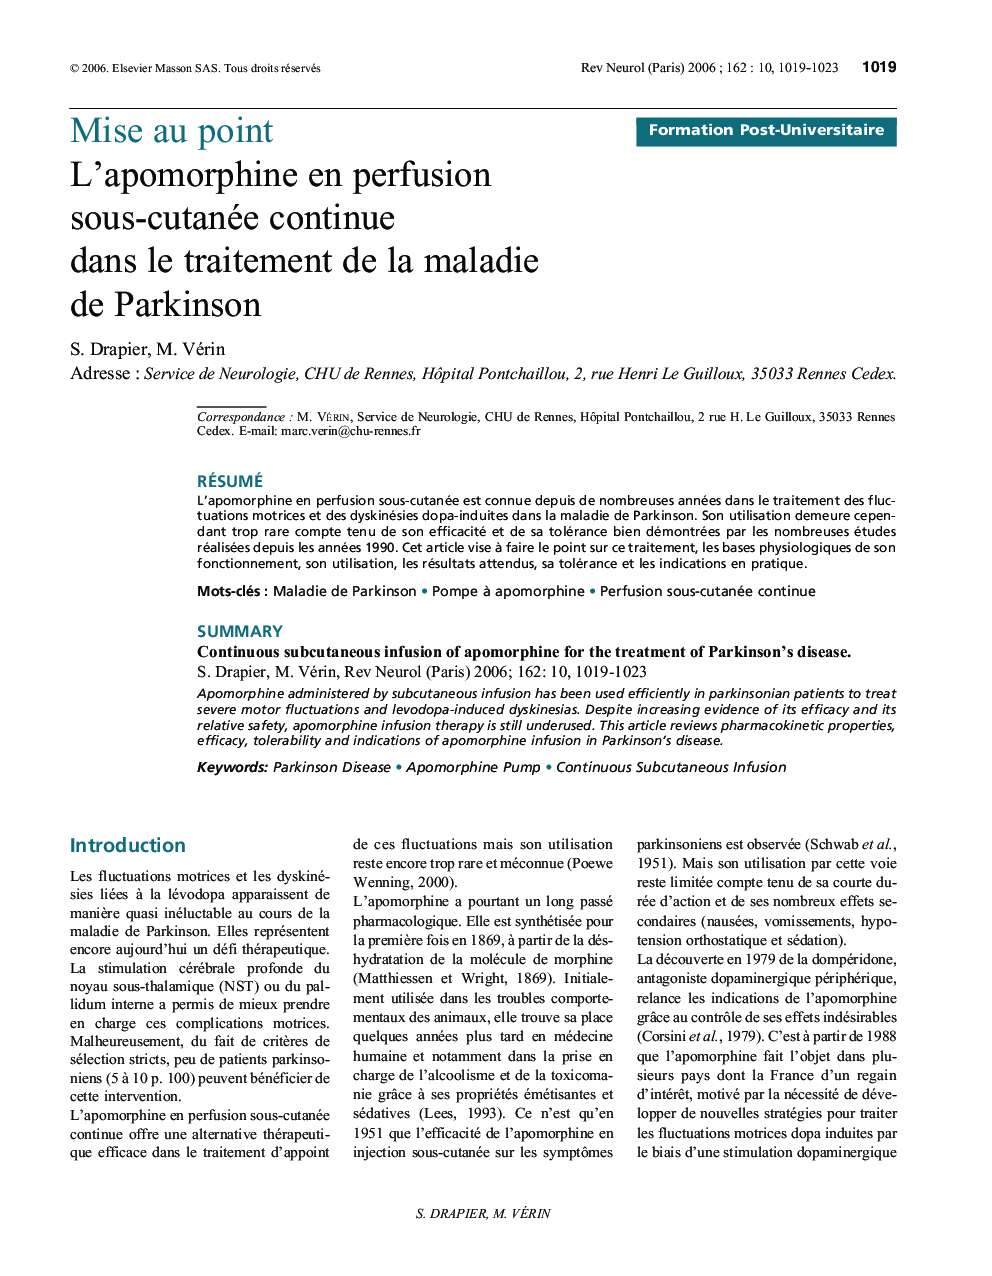 L'apomorphine en perfusion sous-cutanée continue dans le traitement de la maladie de Parkinson